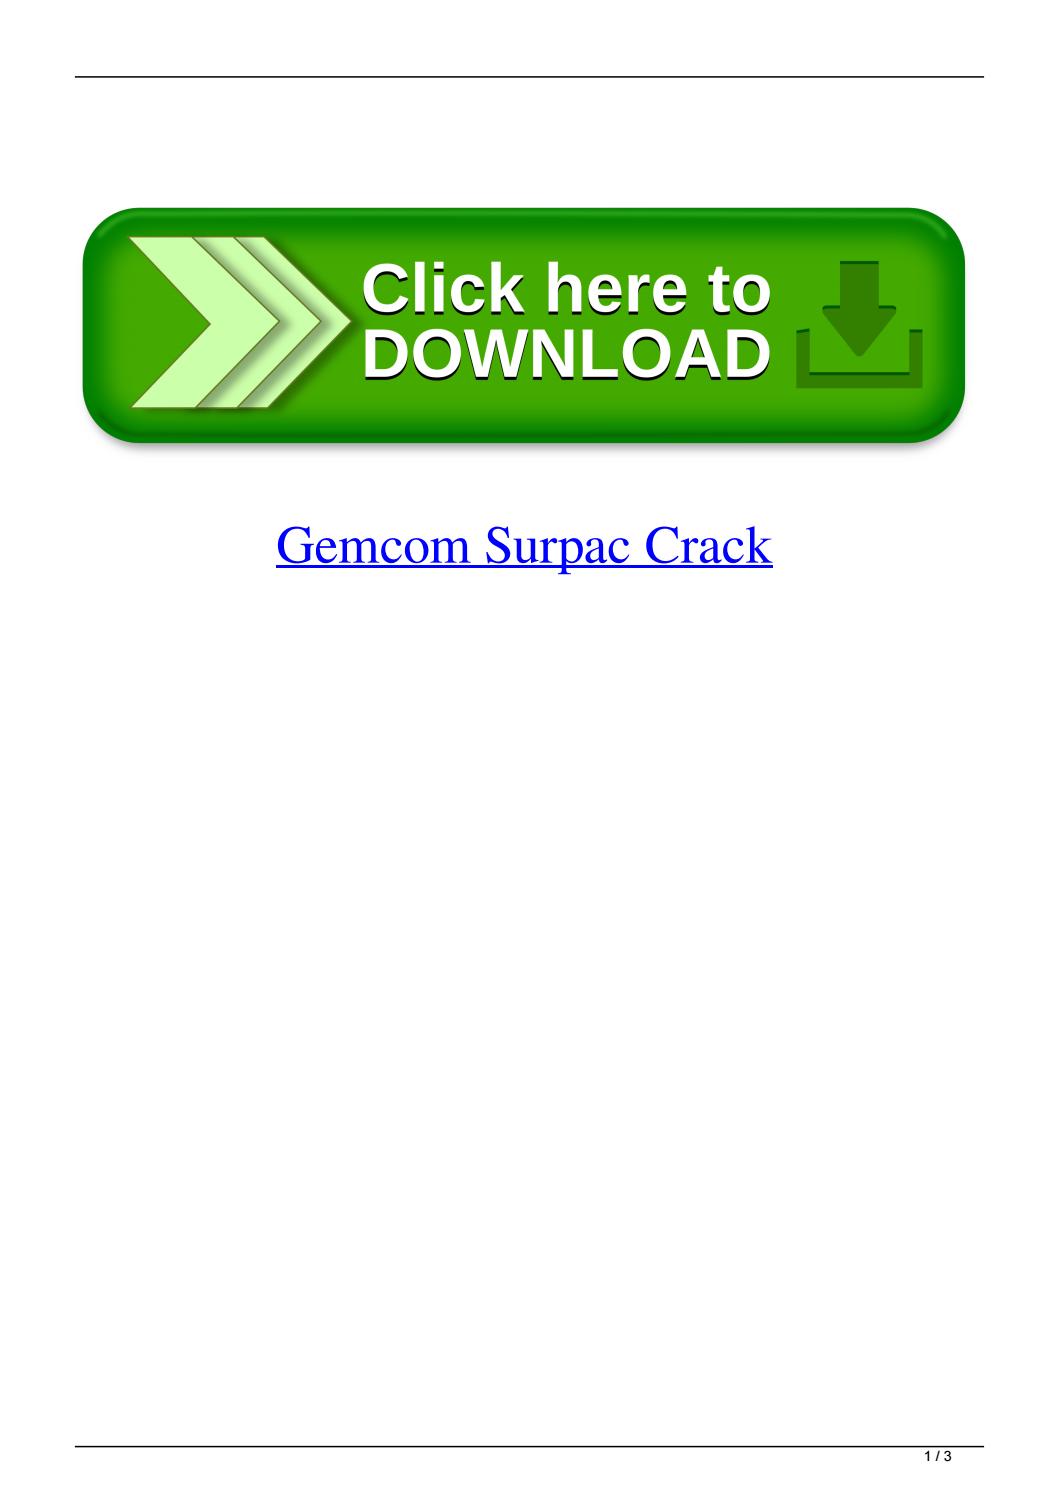 Surpac crack keygen download torrent